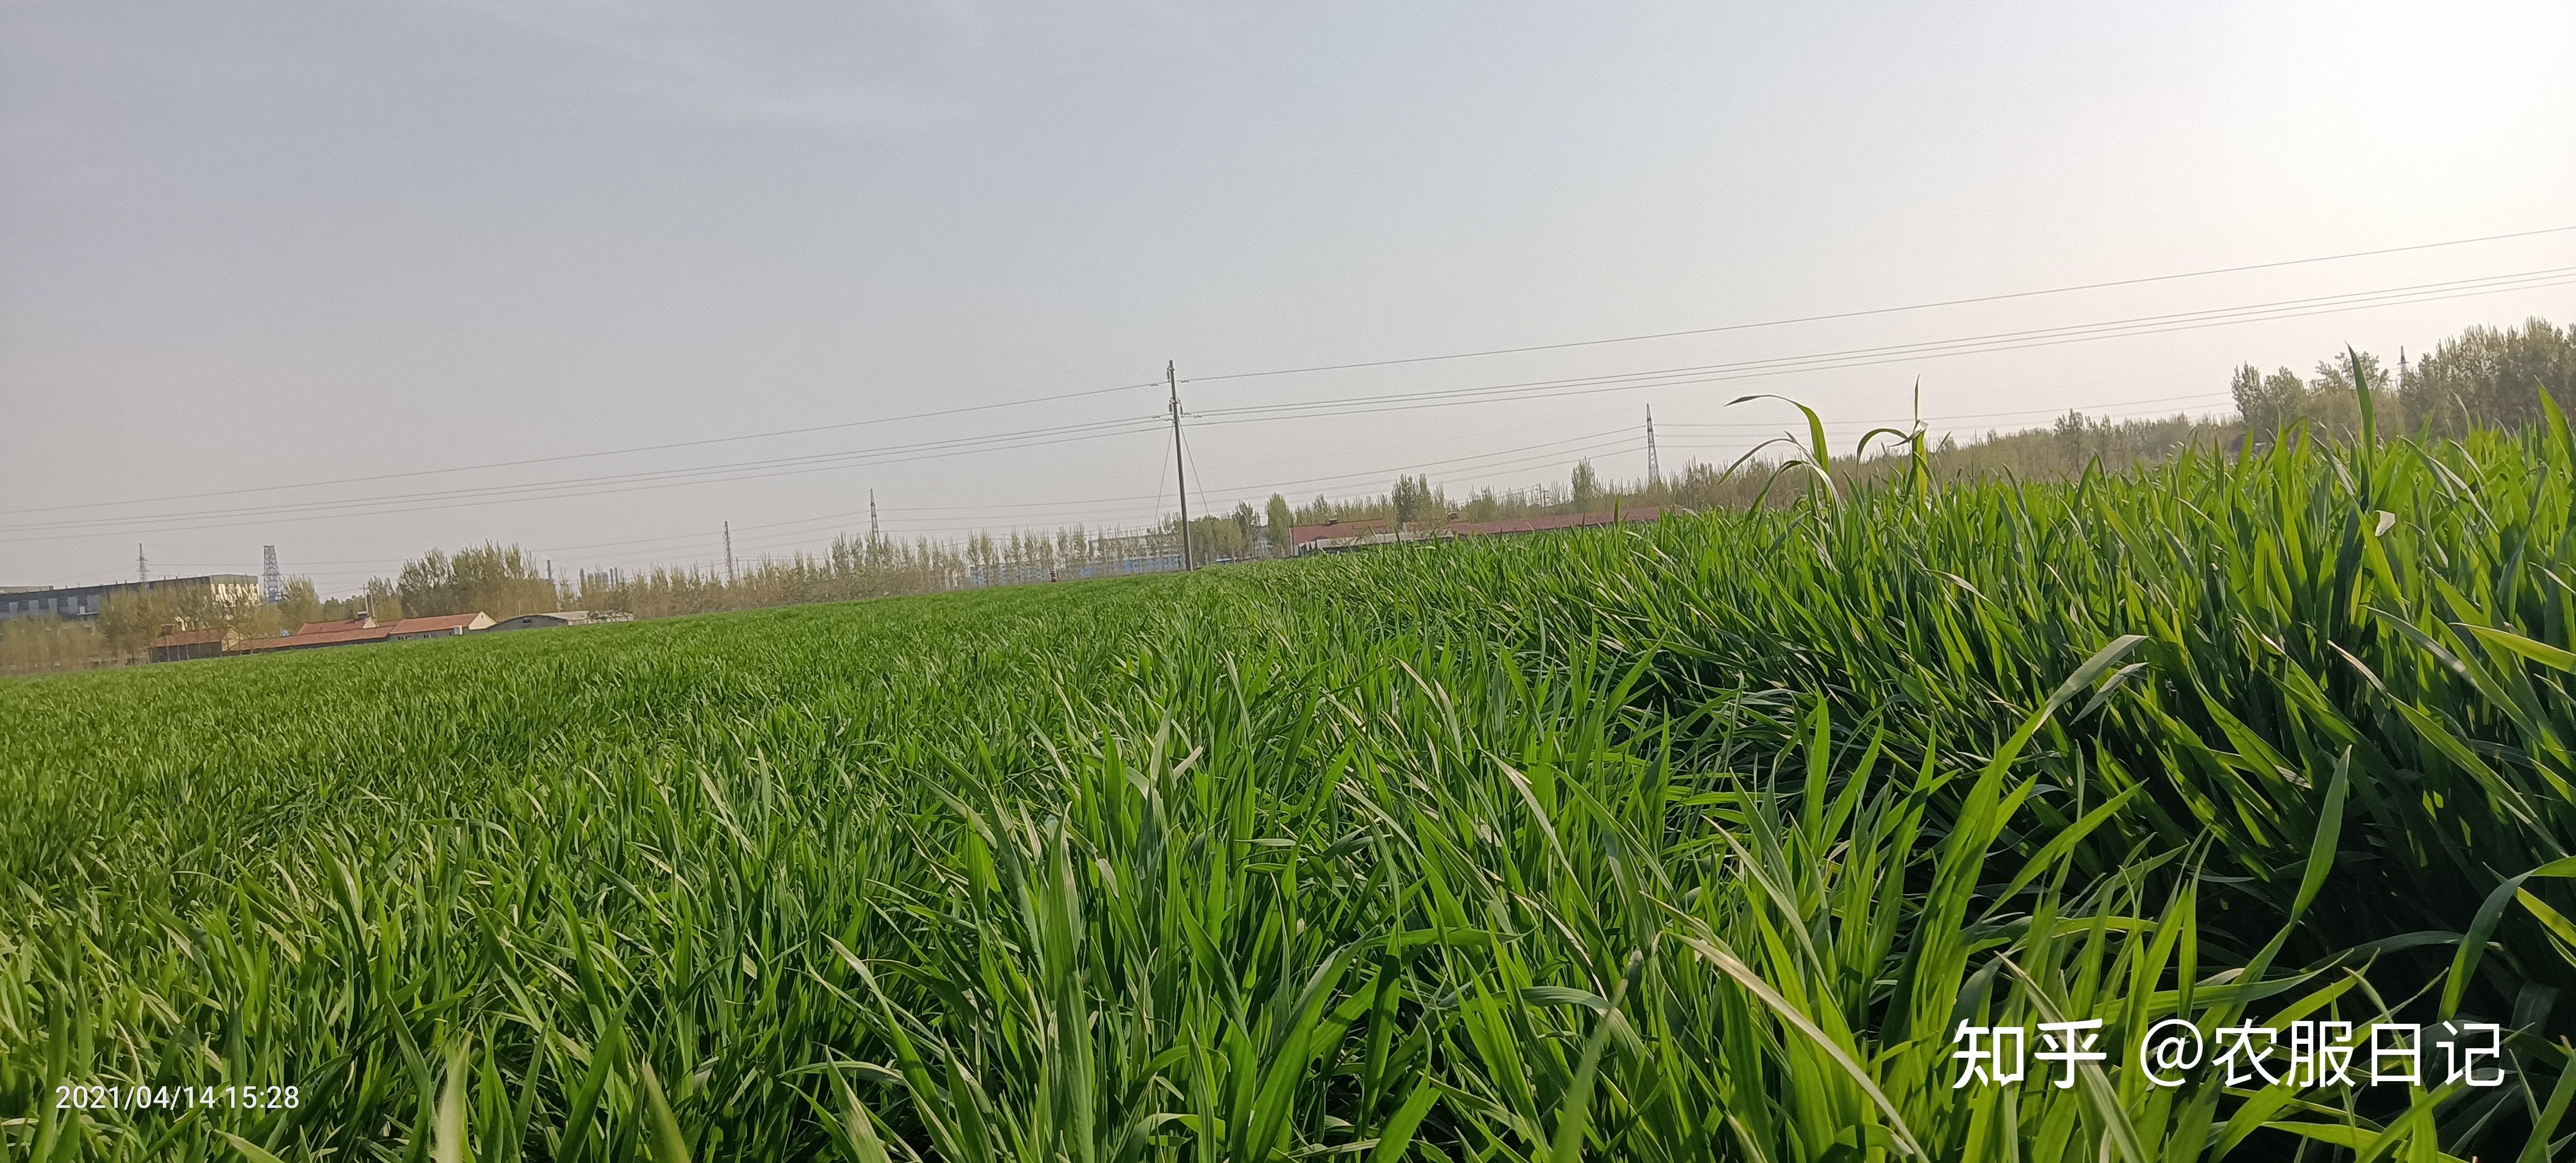 年后小麦如何施肥？用什么小麦复合肥好？ - 农化服务-行业动态 - 复合肥-复合肥生产厂家-高塔复合肥-大量元素水溶肥-微生物菌肥生产厂家-安阳中盛肥业科技有限责任公司